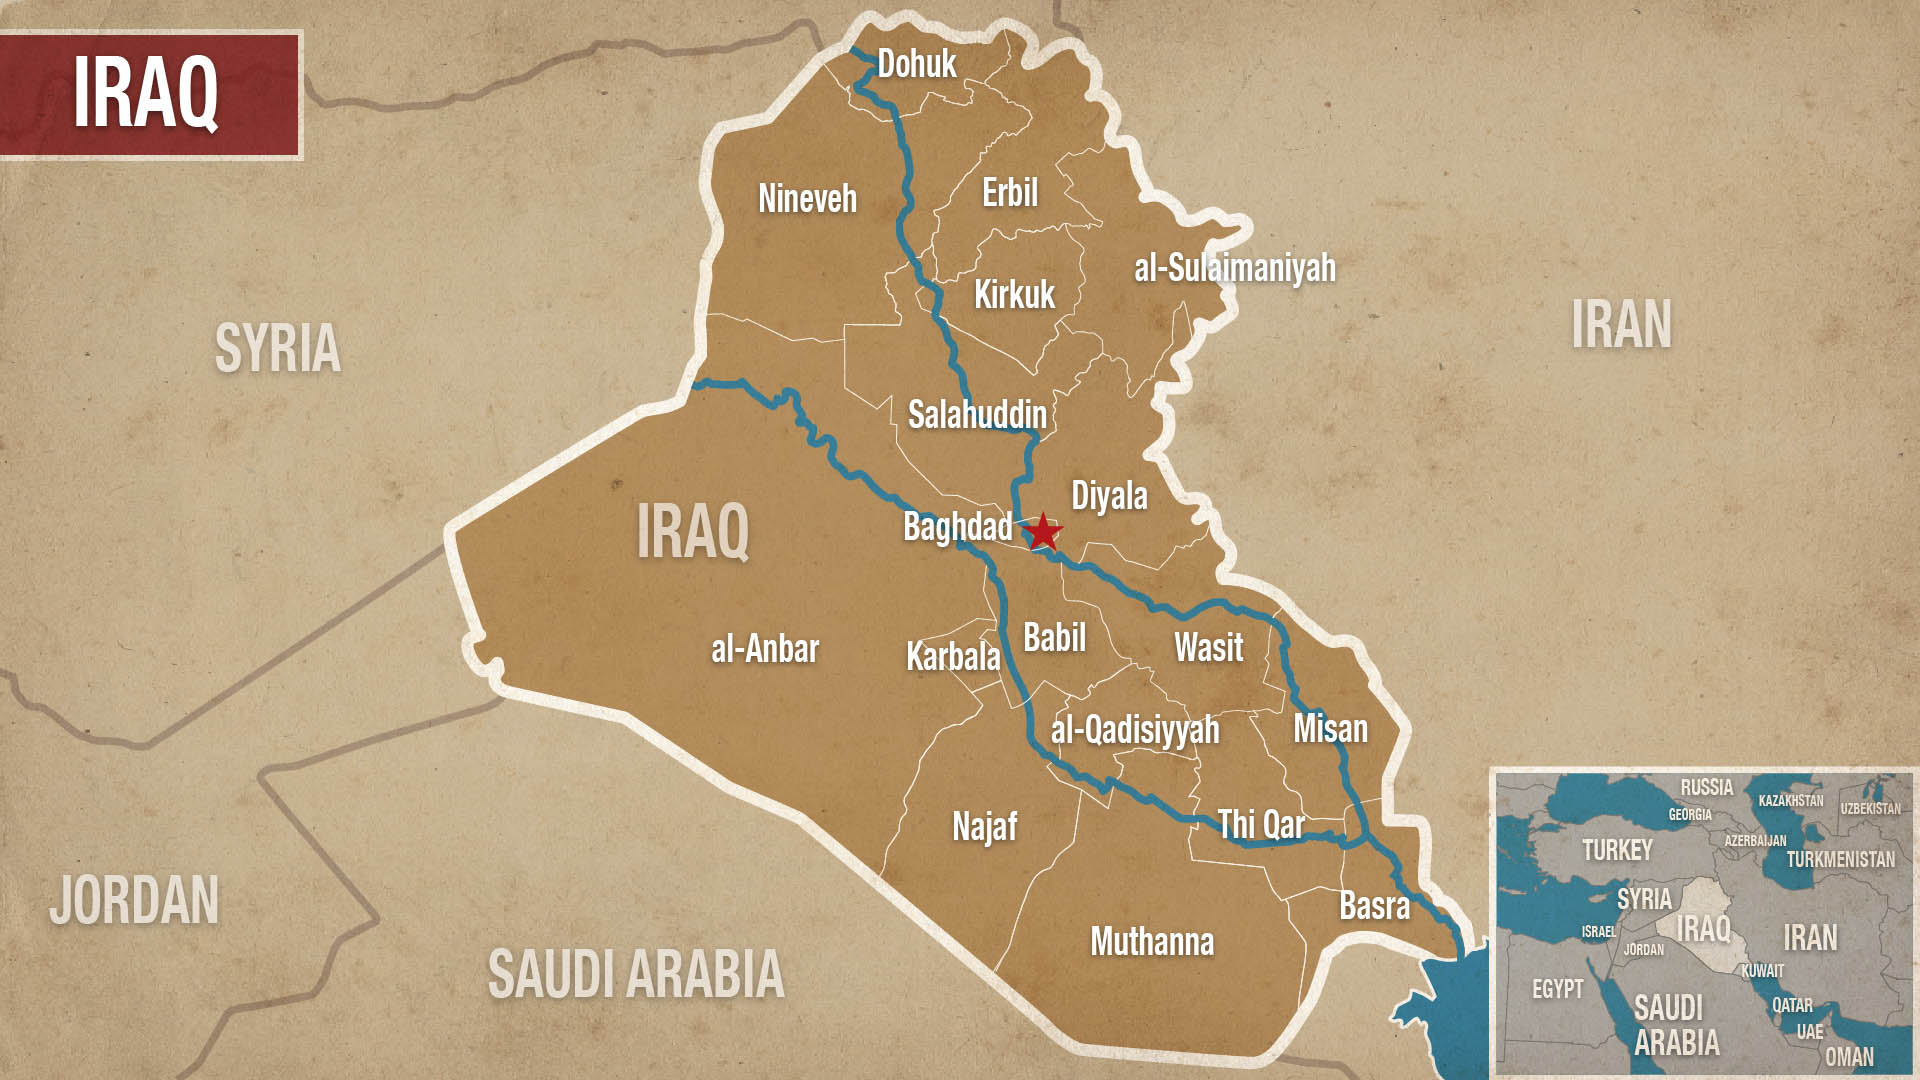 IRAQ-provinces.jpg